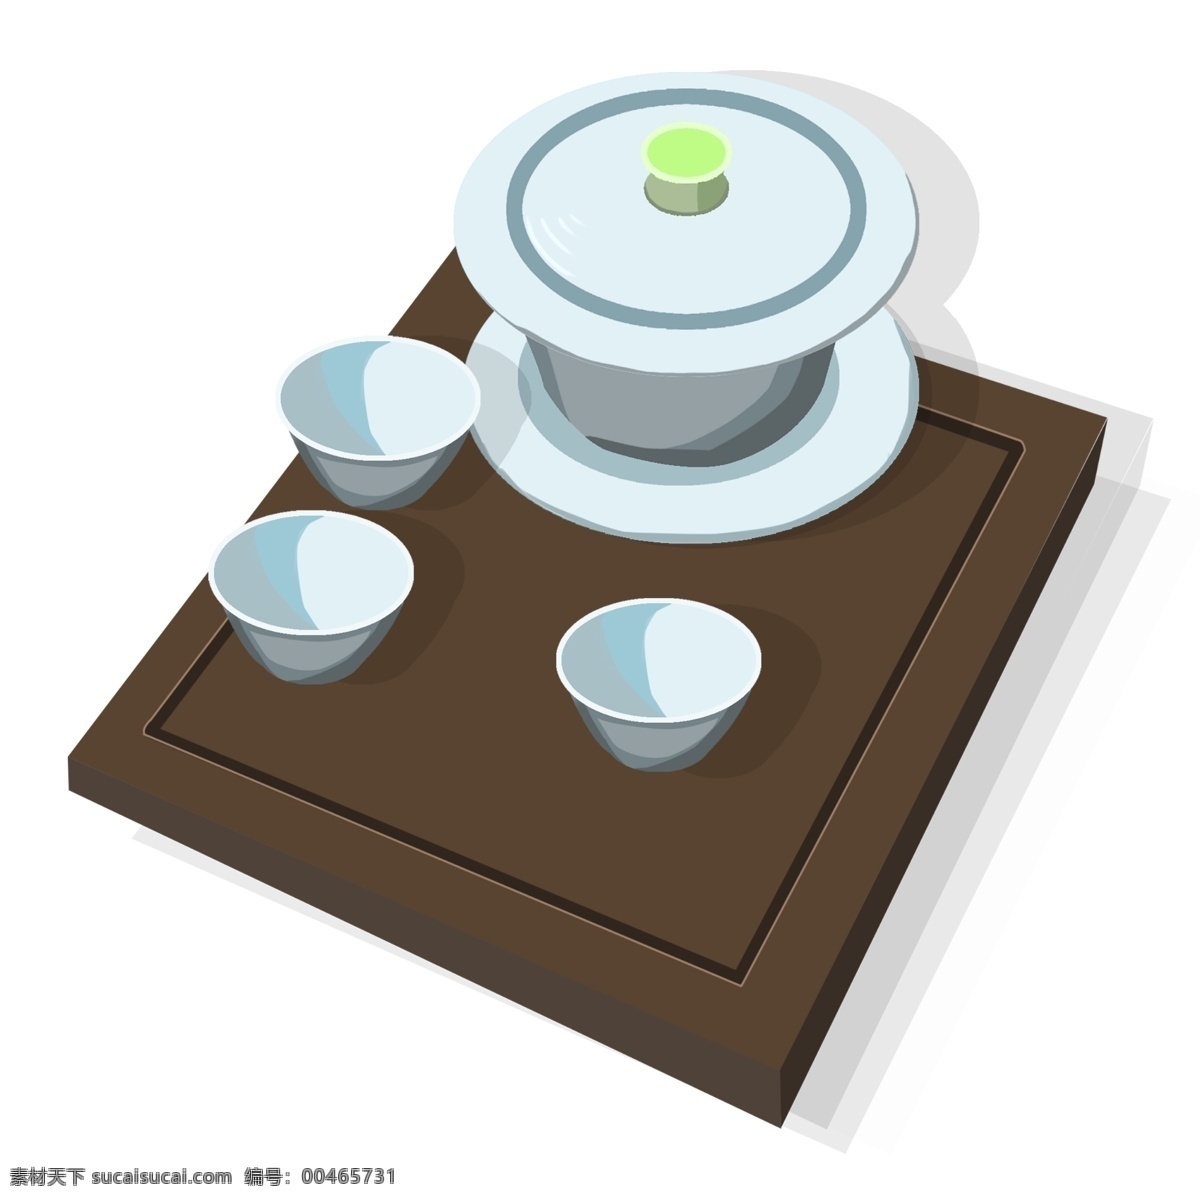 手绘 d 图 茶具 插画 手绘茶具 漂亮的茶具 喝茶用品 瓷器茶具 浅蓝色茶具 茶杯子 棕色的桌子